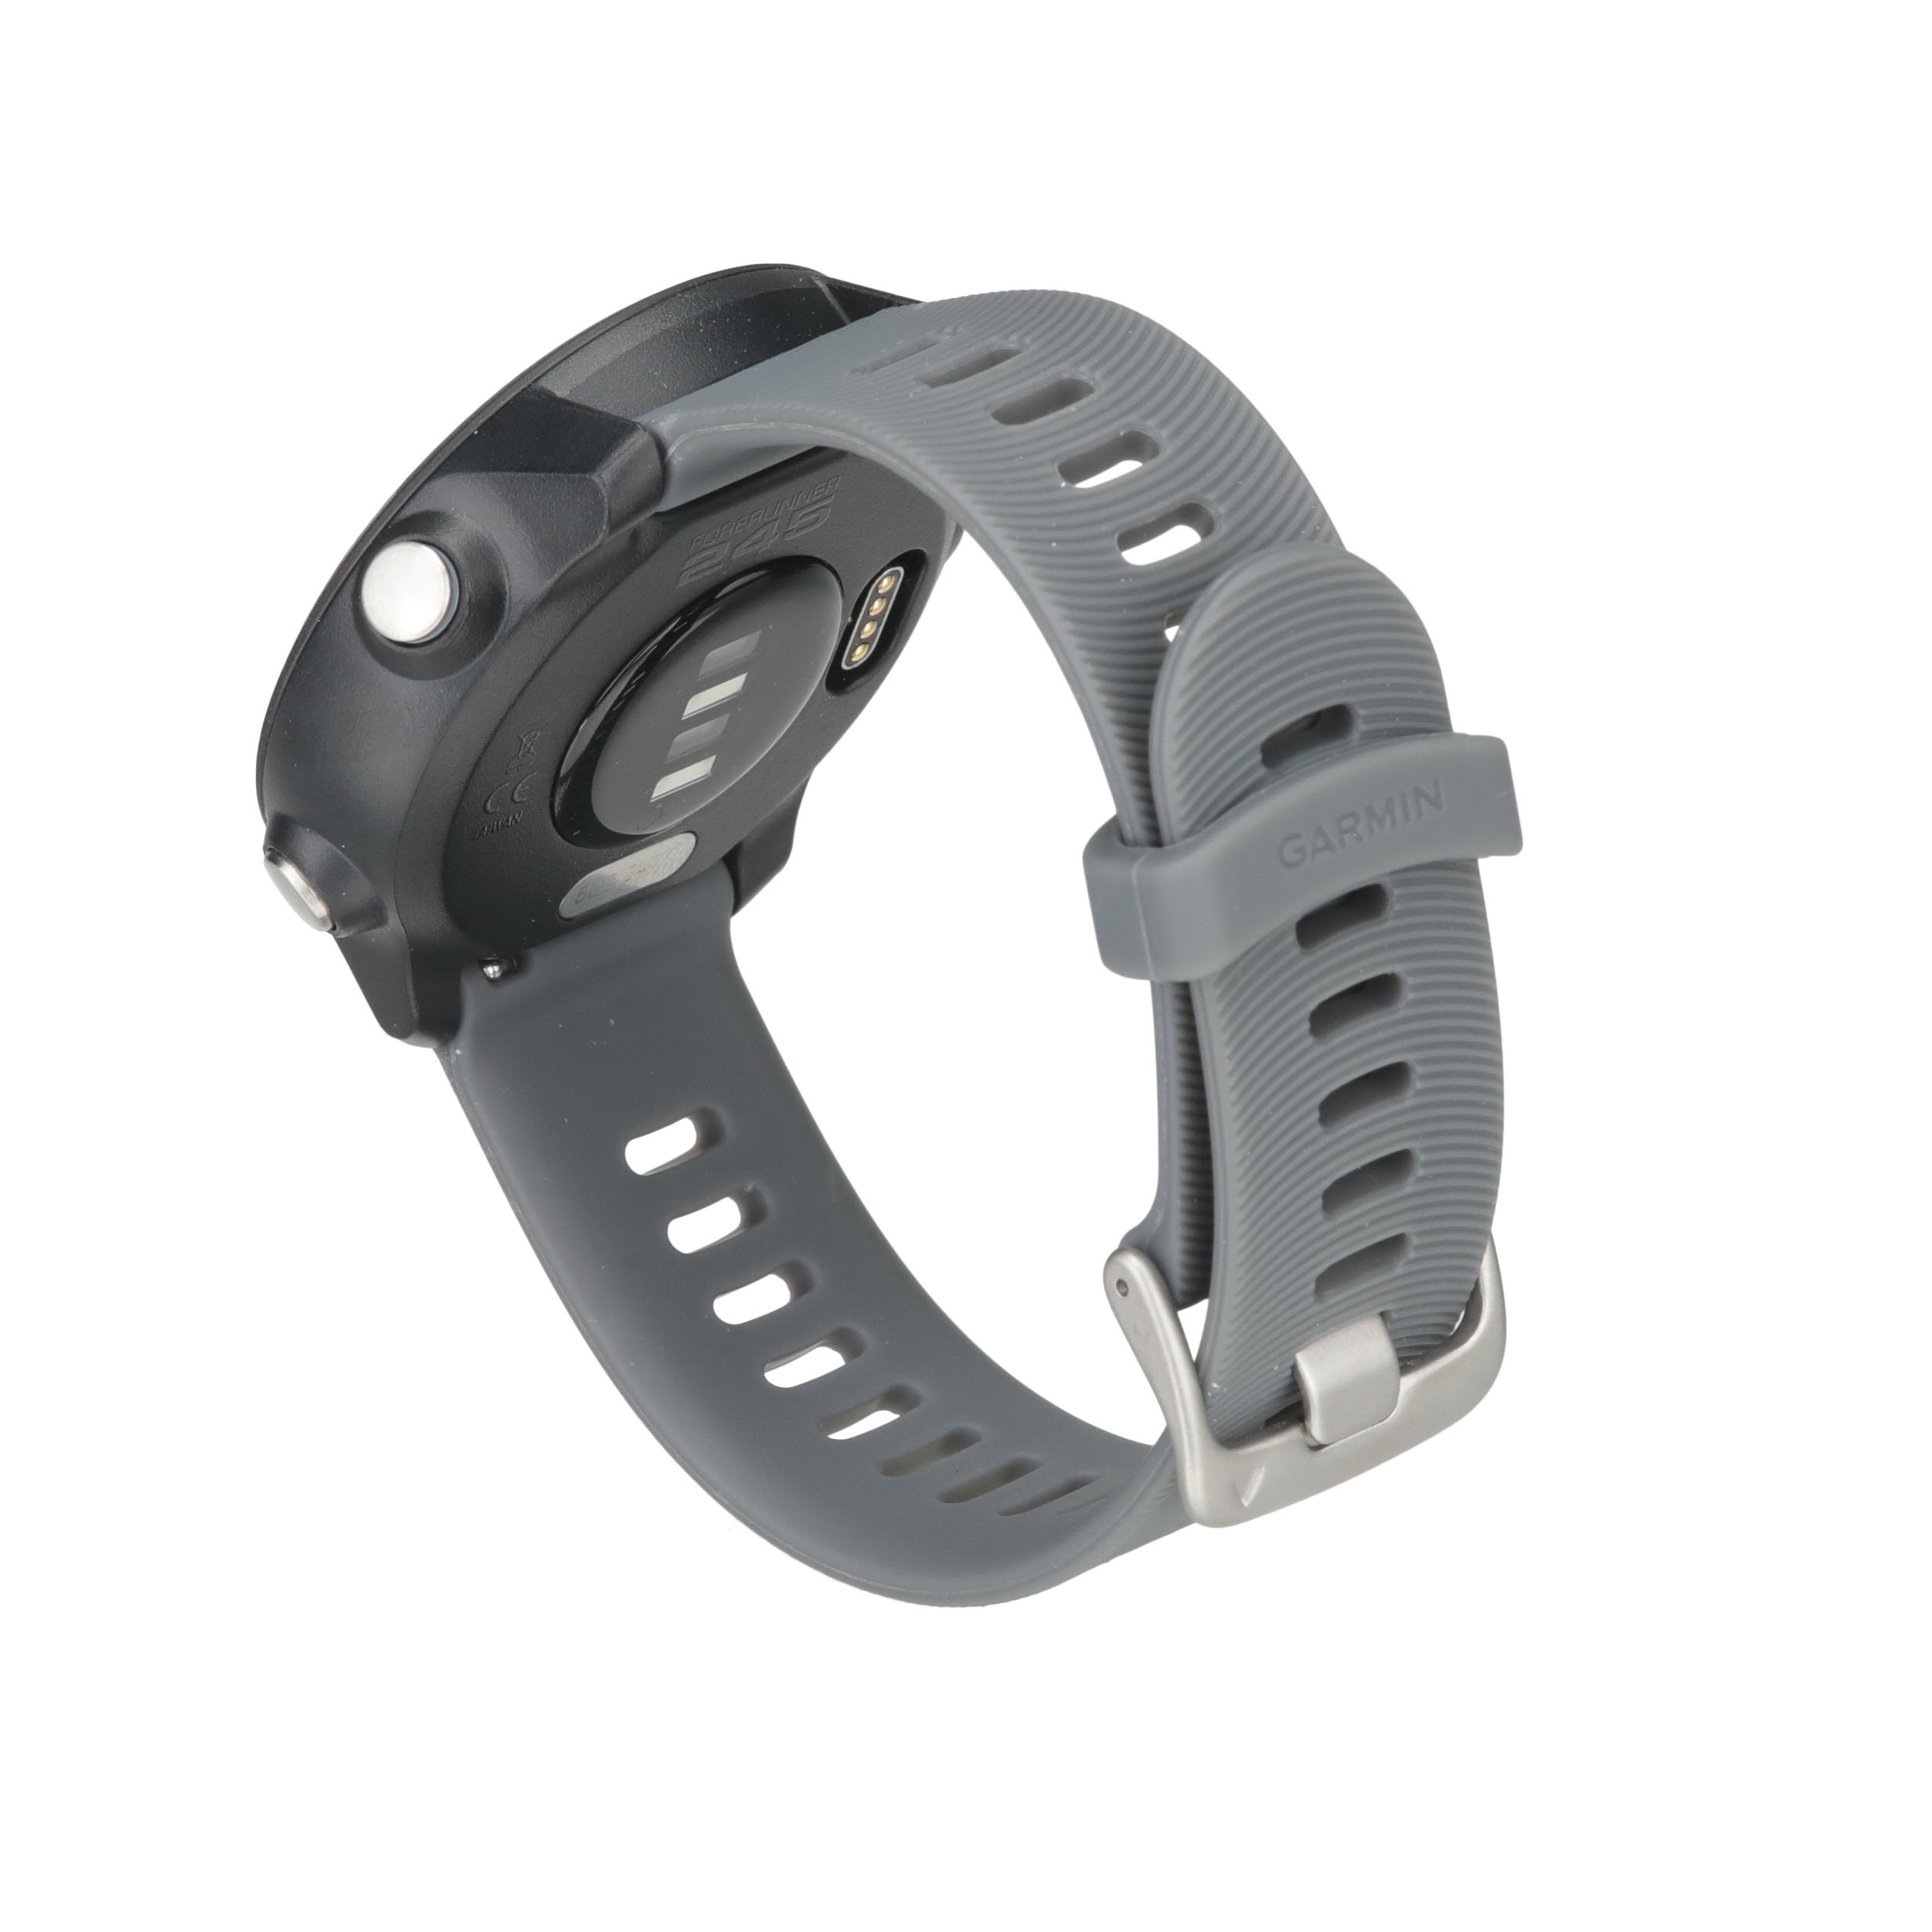 Decathlon tiene el popular Garmin Forerunner 245 rebajado de precio: un  reloj deportivo con GPS, pulsioxímetro y mucha autonomía